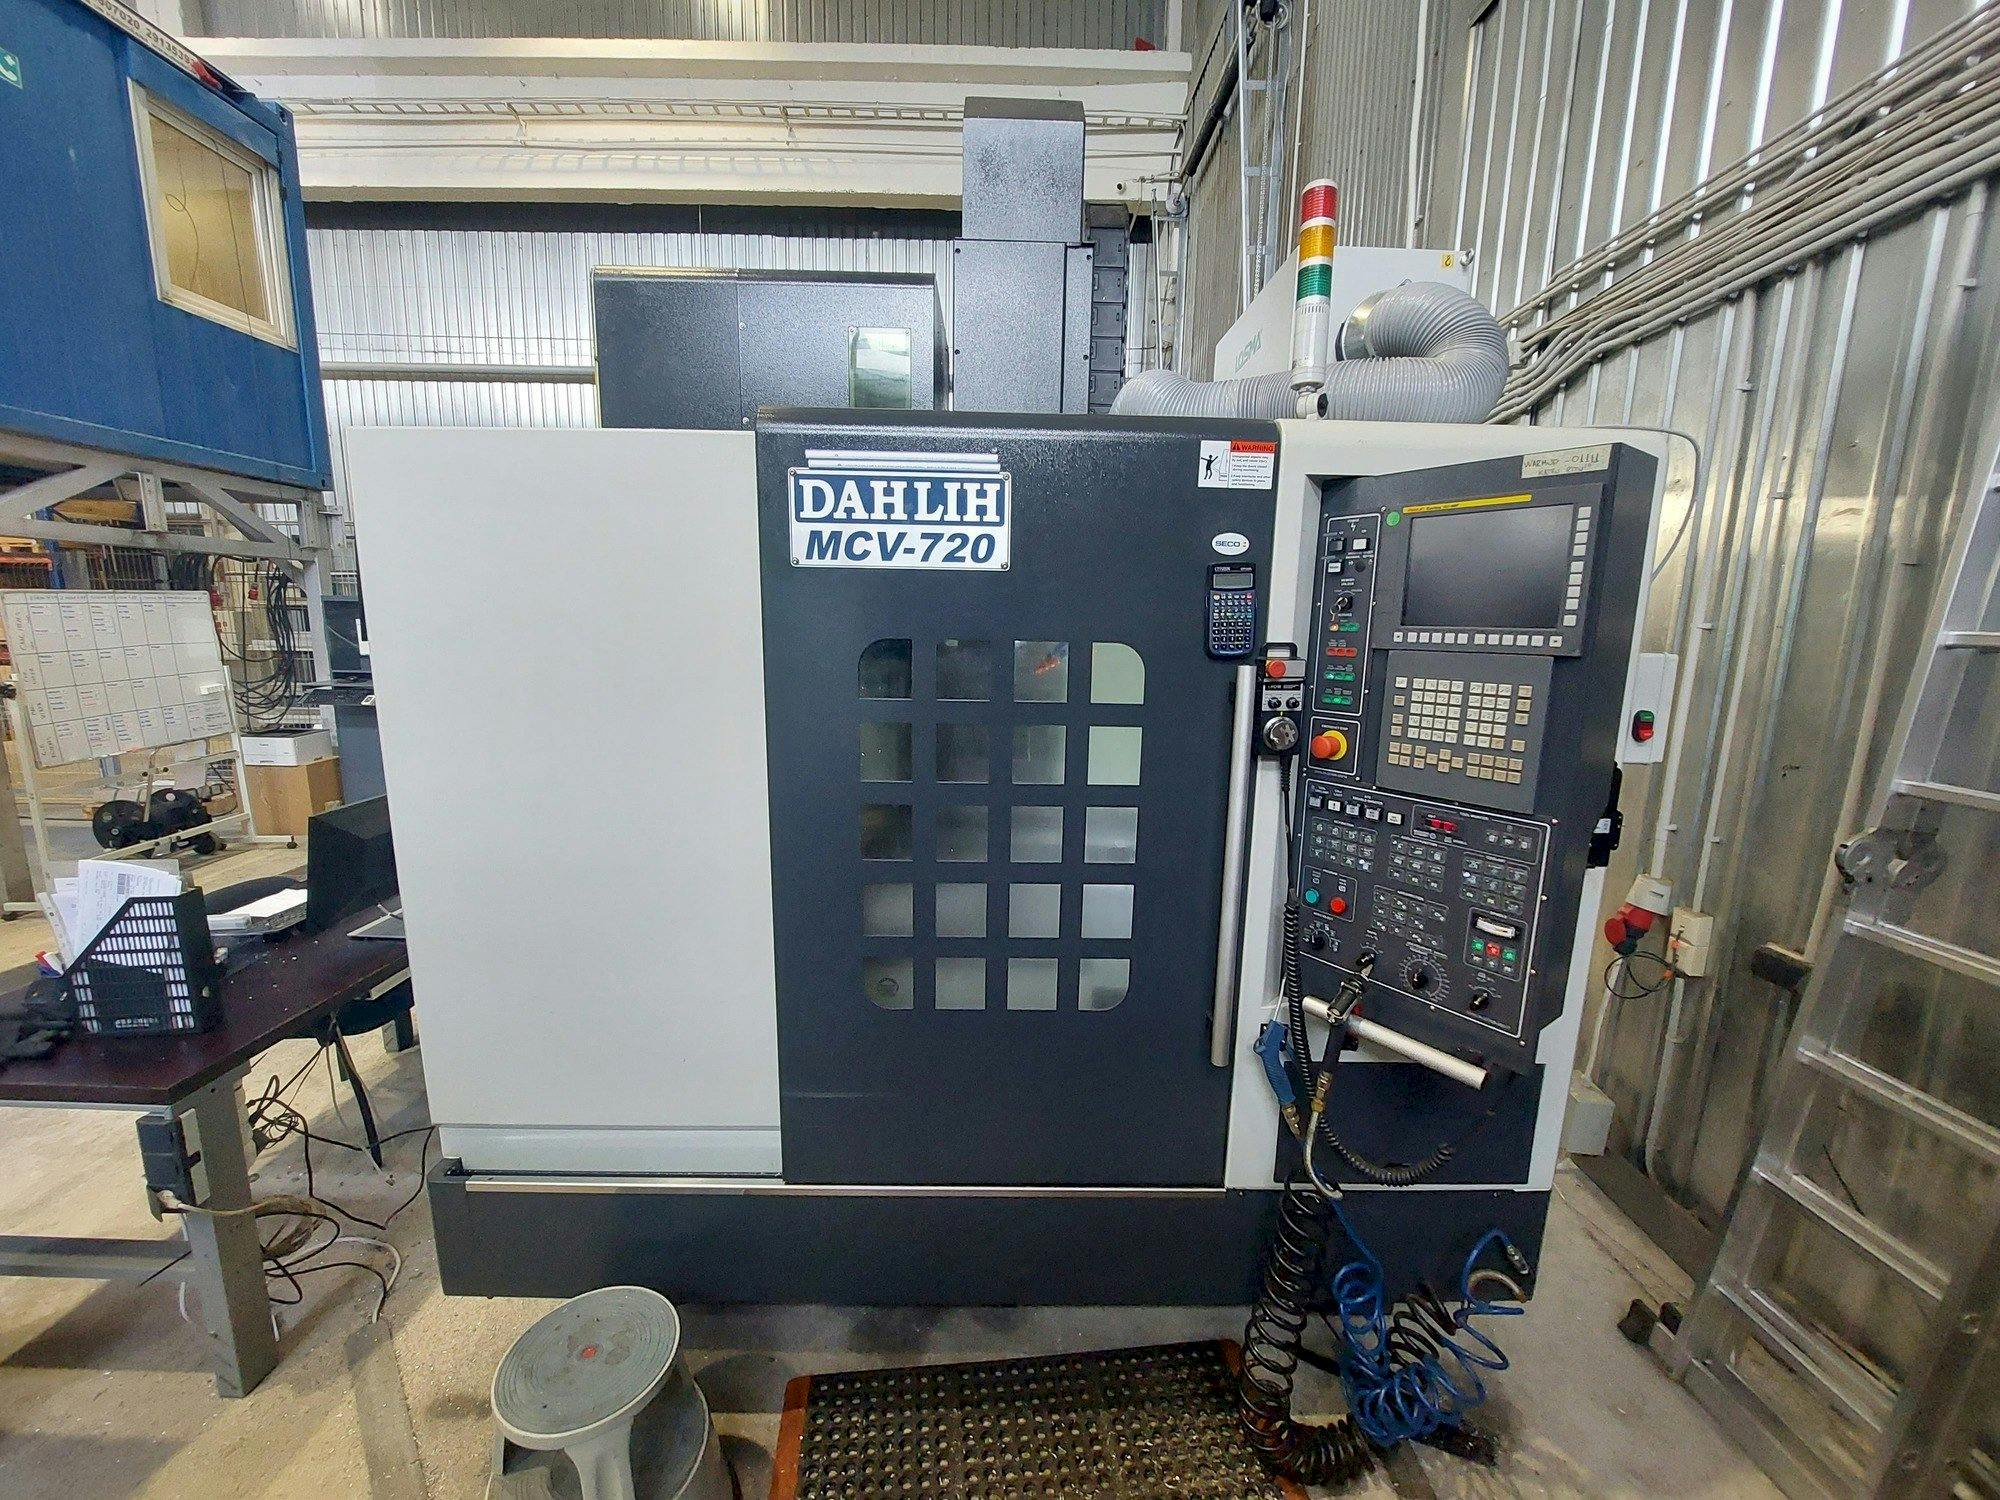 Vista frontal de la máquina DAH LIH MCV-720